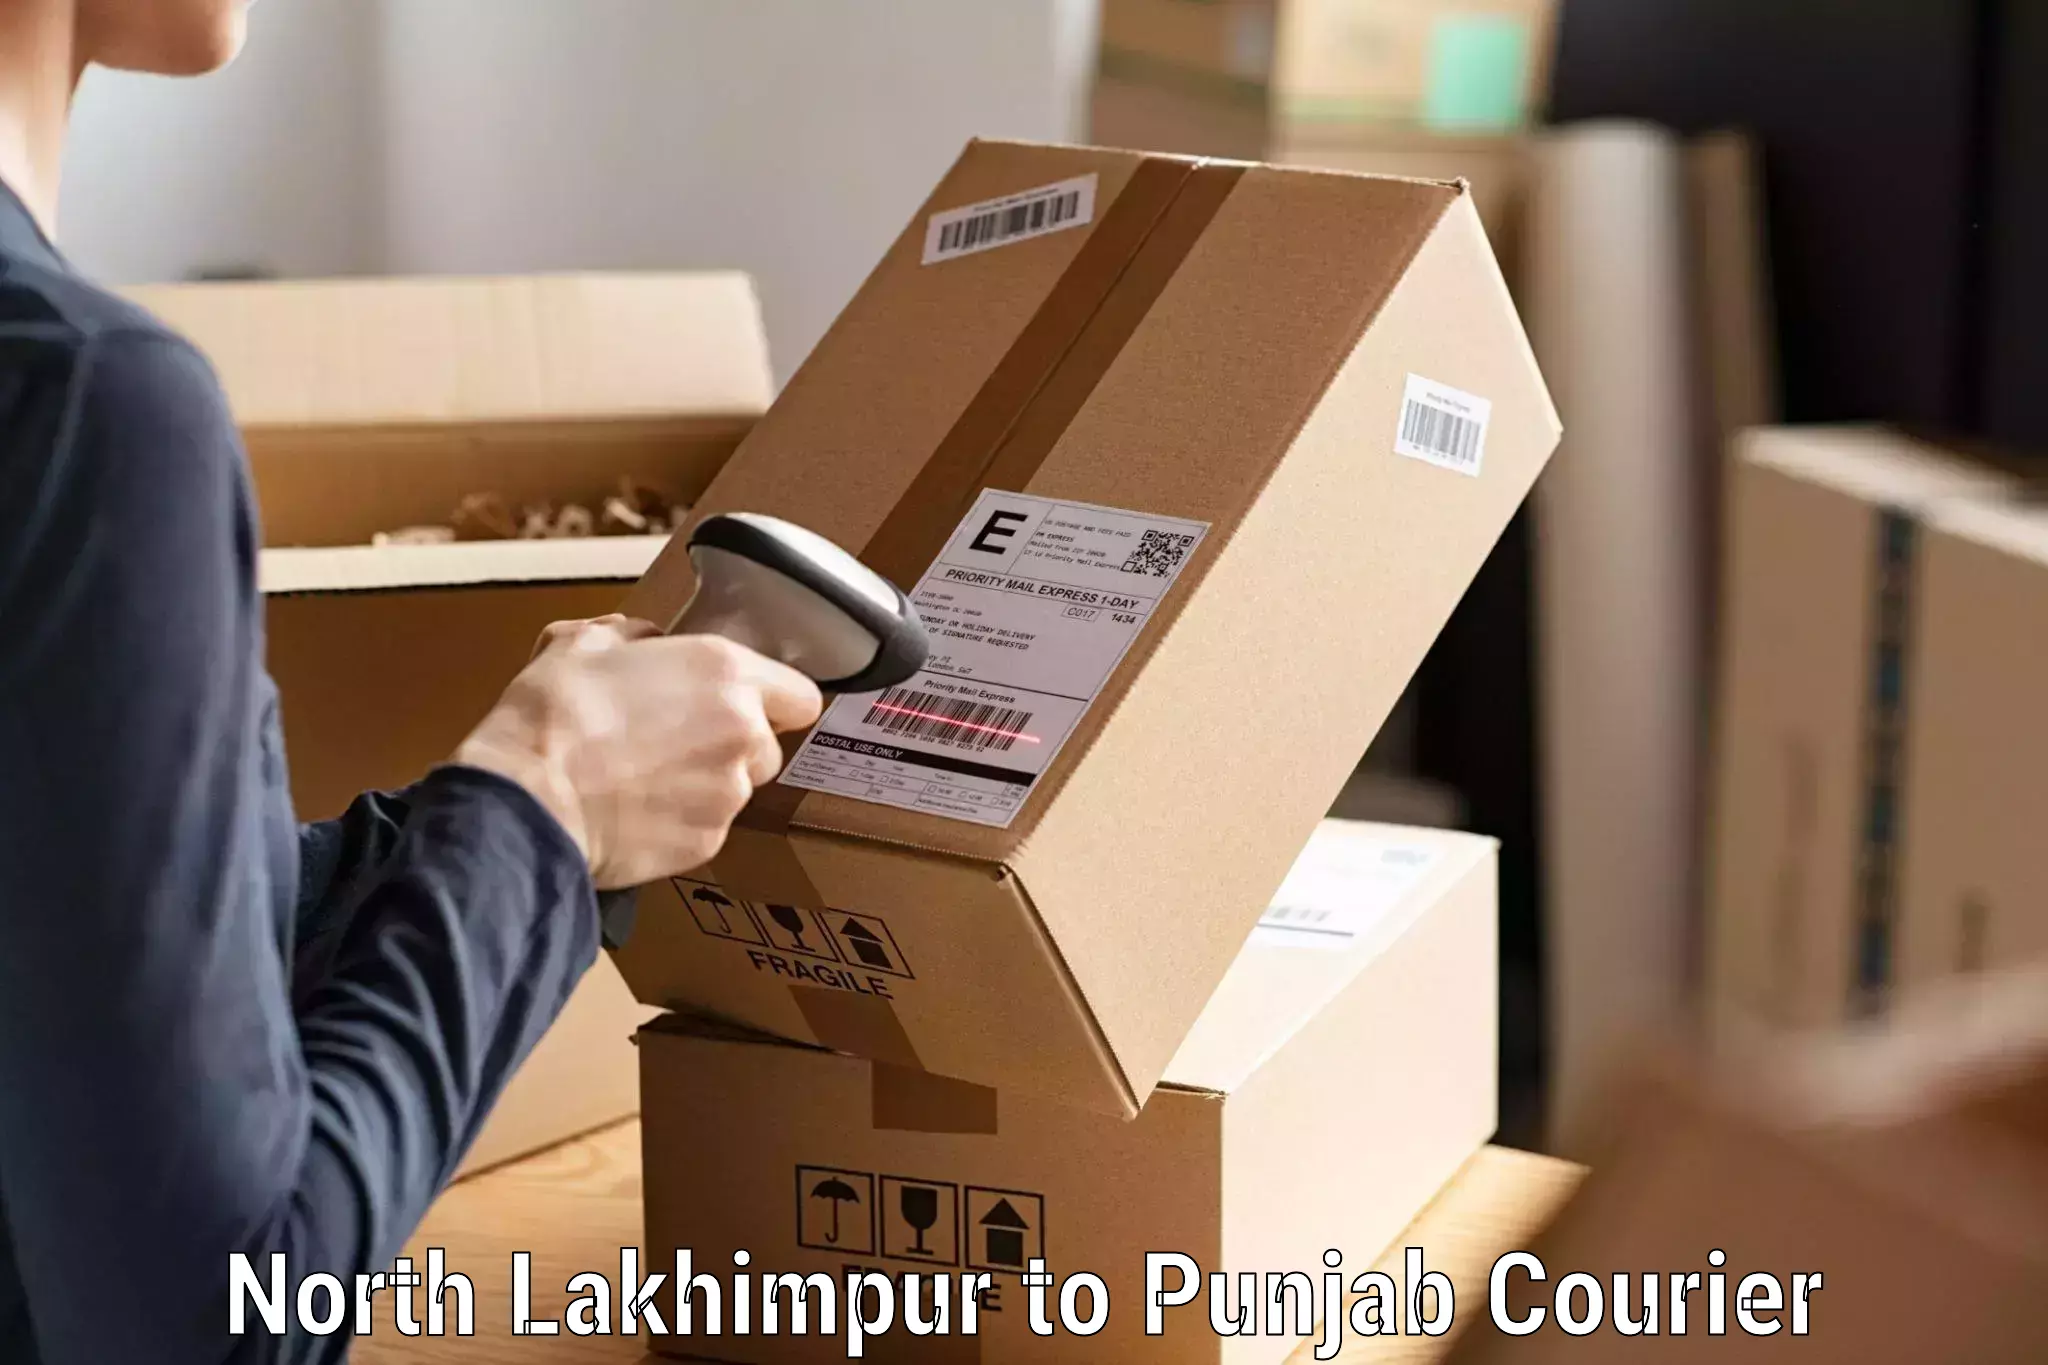 Speedy delivery service North Lakhimpur to Guru Nanak Dev University Amritsar